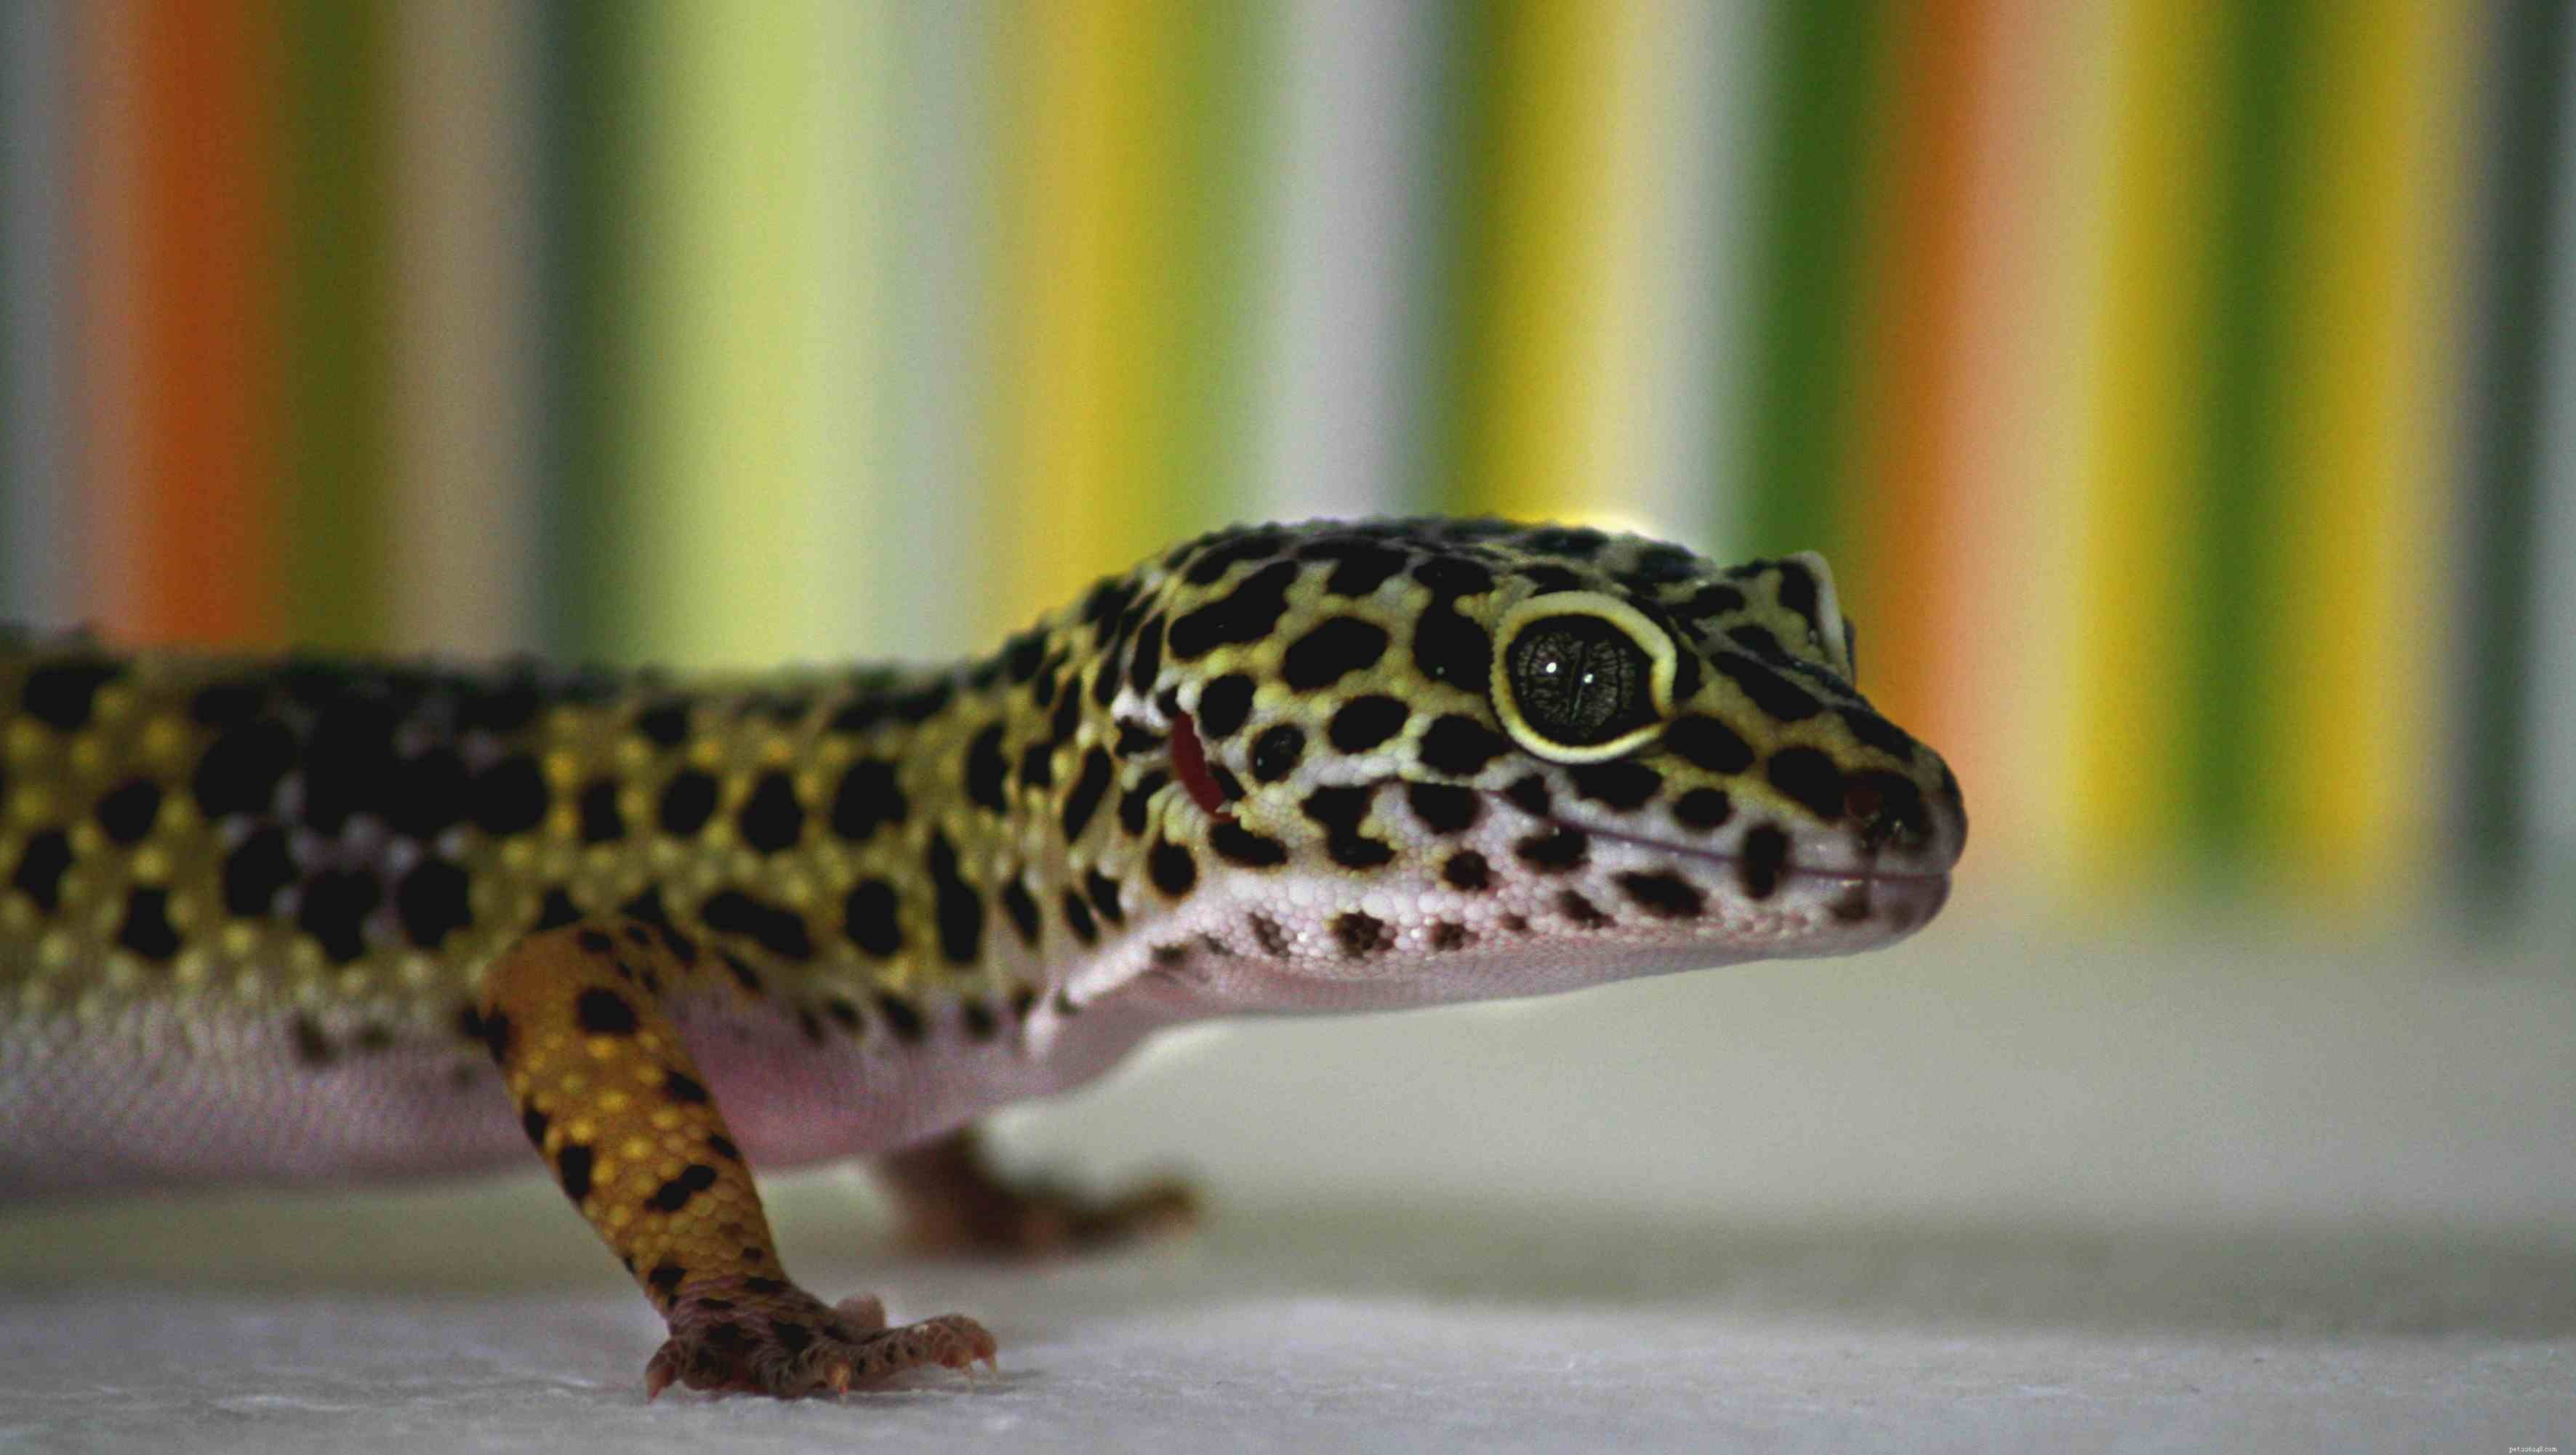 Veelvoorkomende soorten gekko s voor beginners